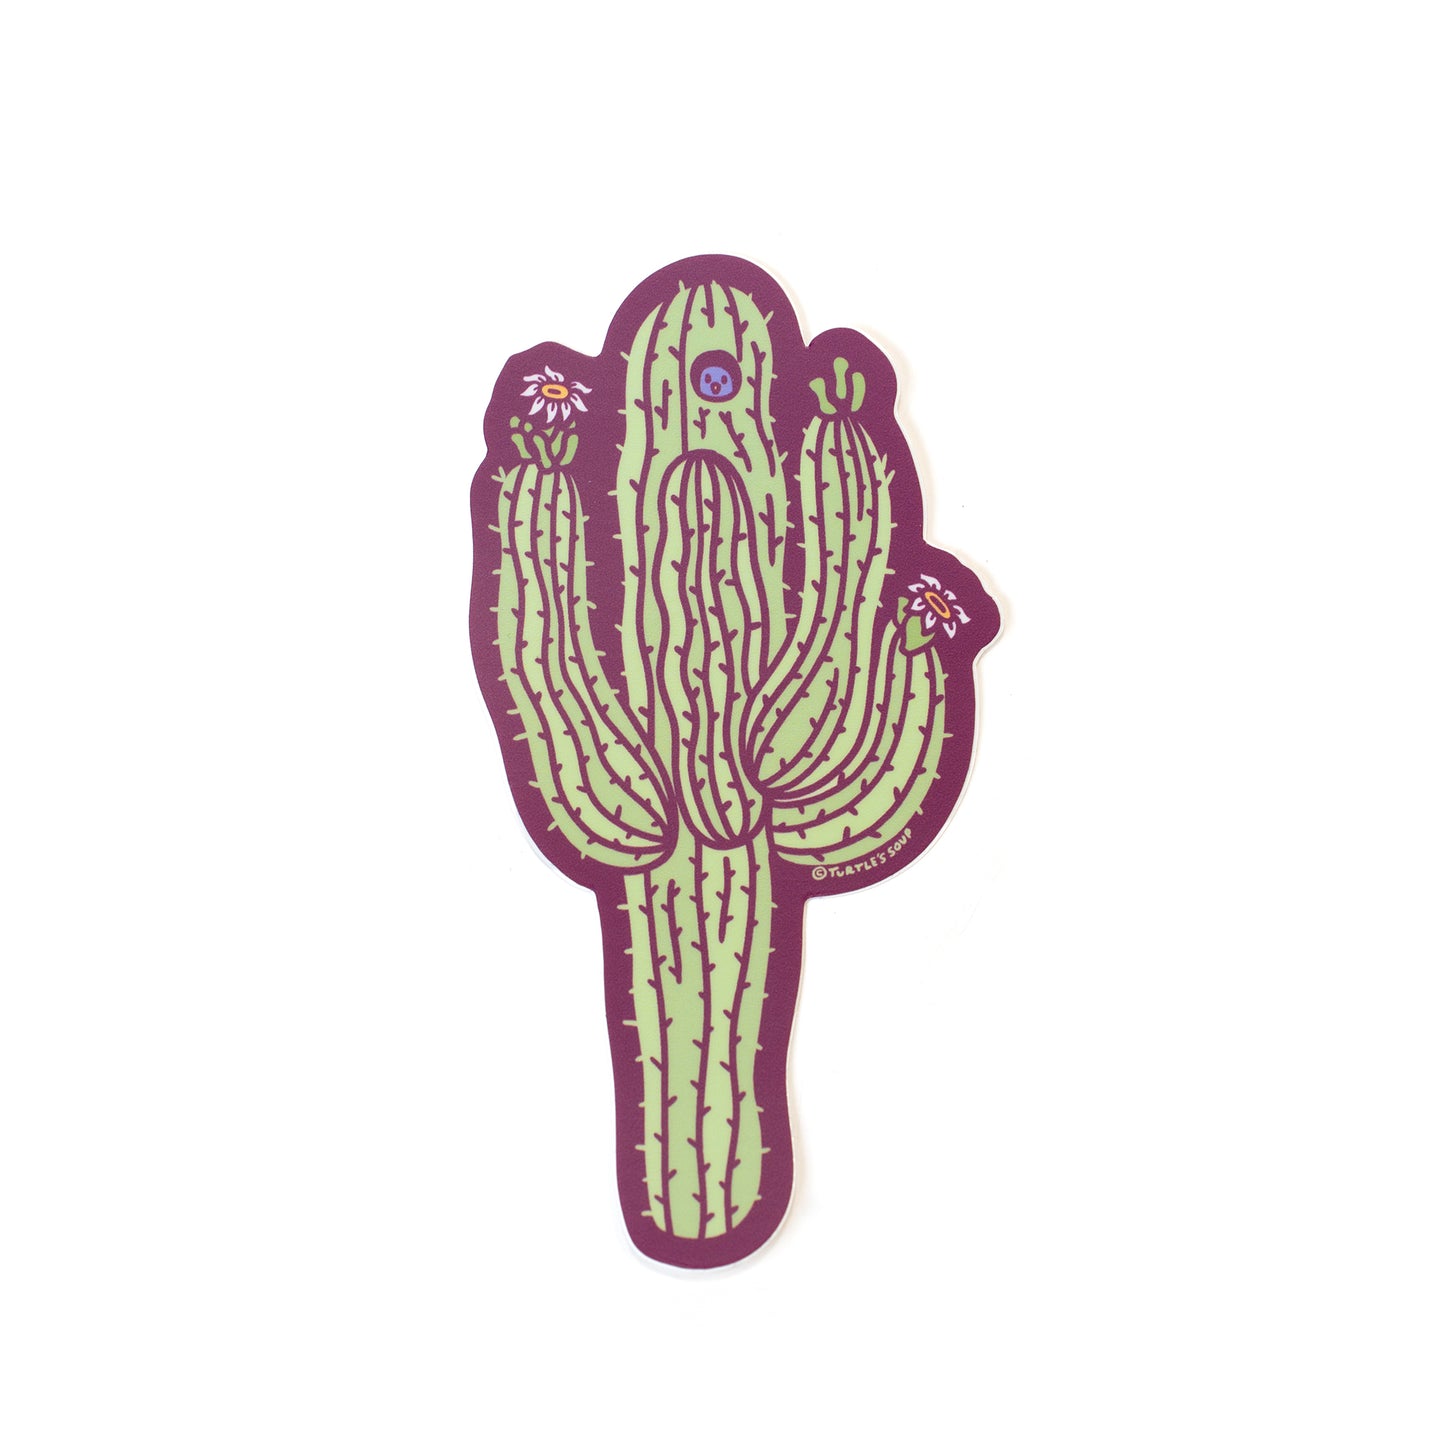 Sonoran Saguaro Cactus Sticker